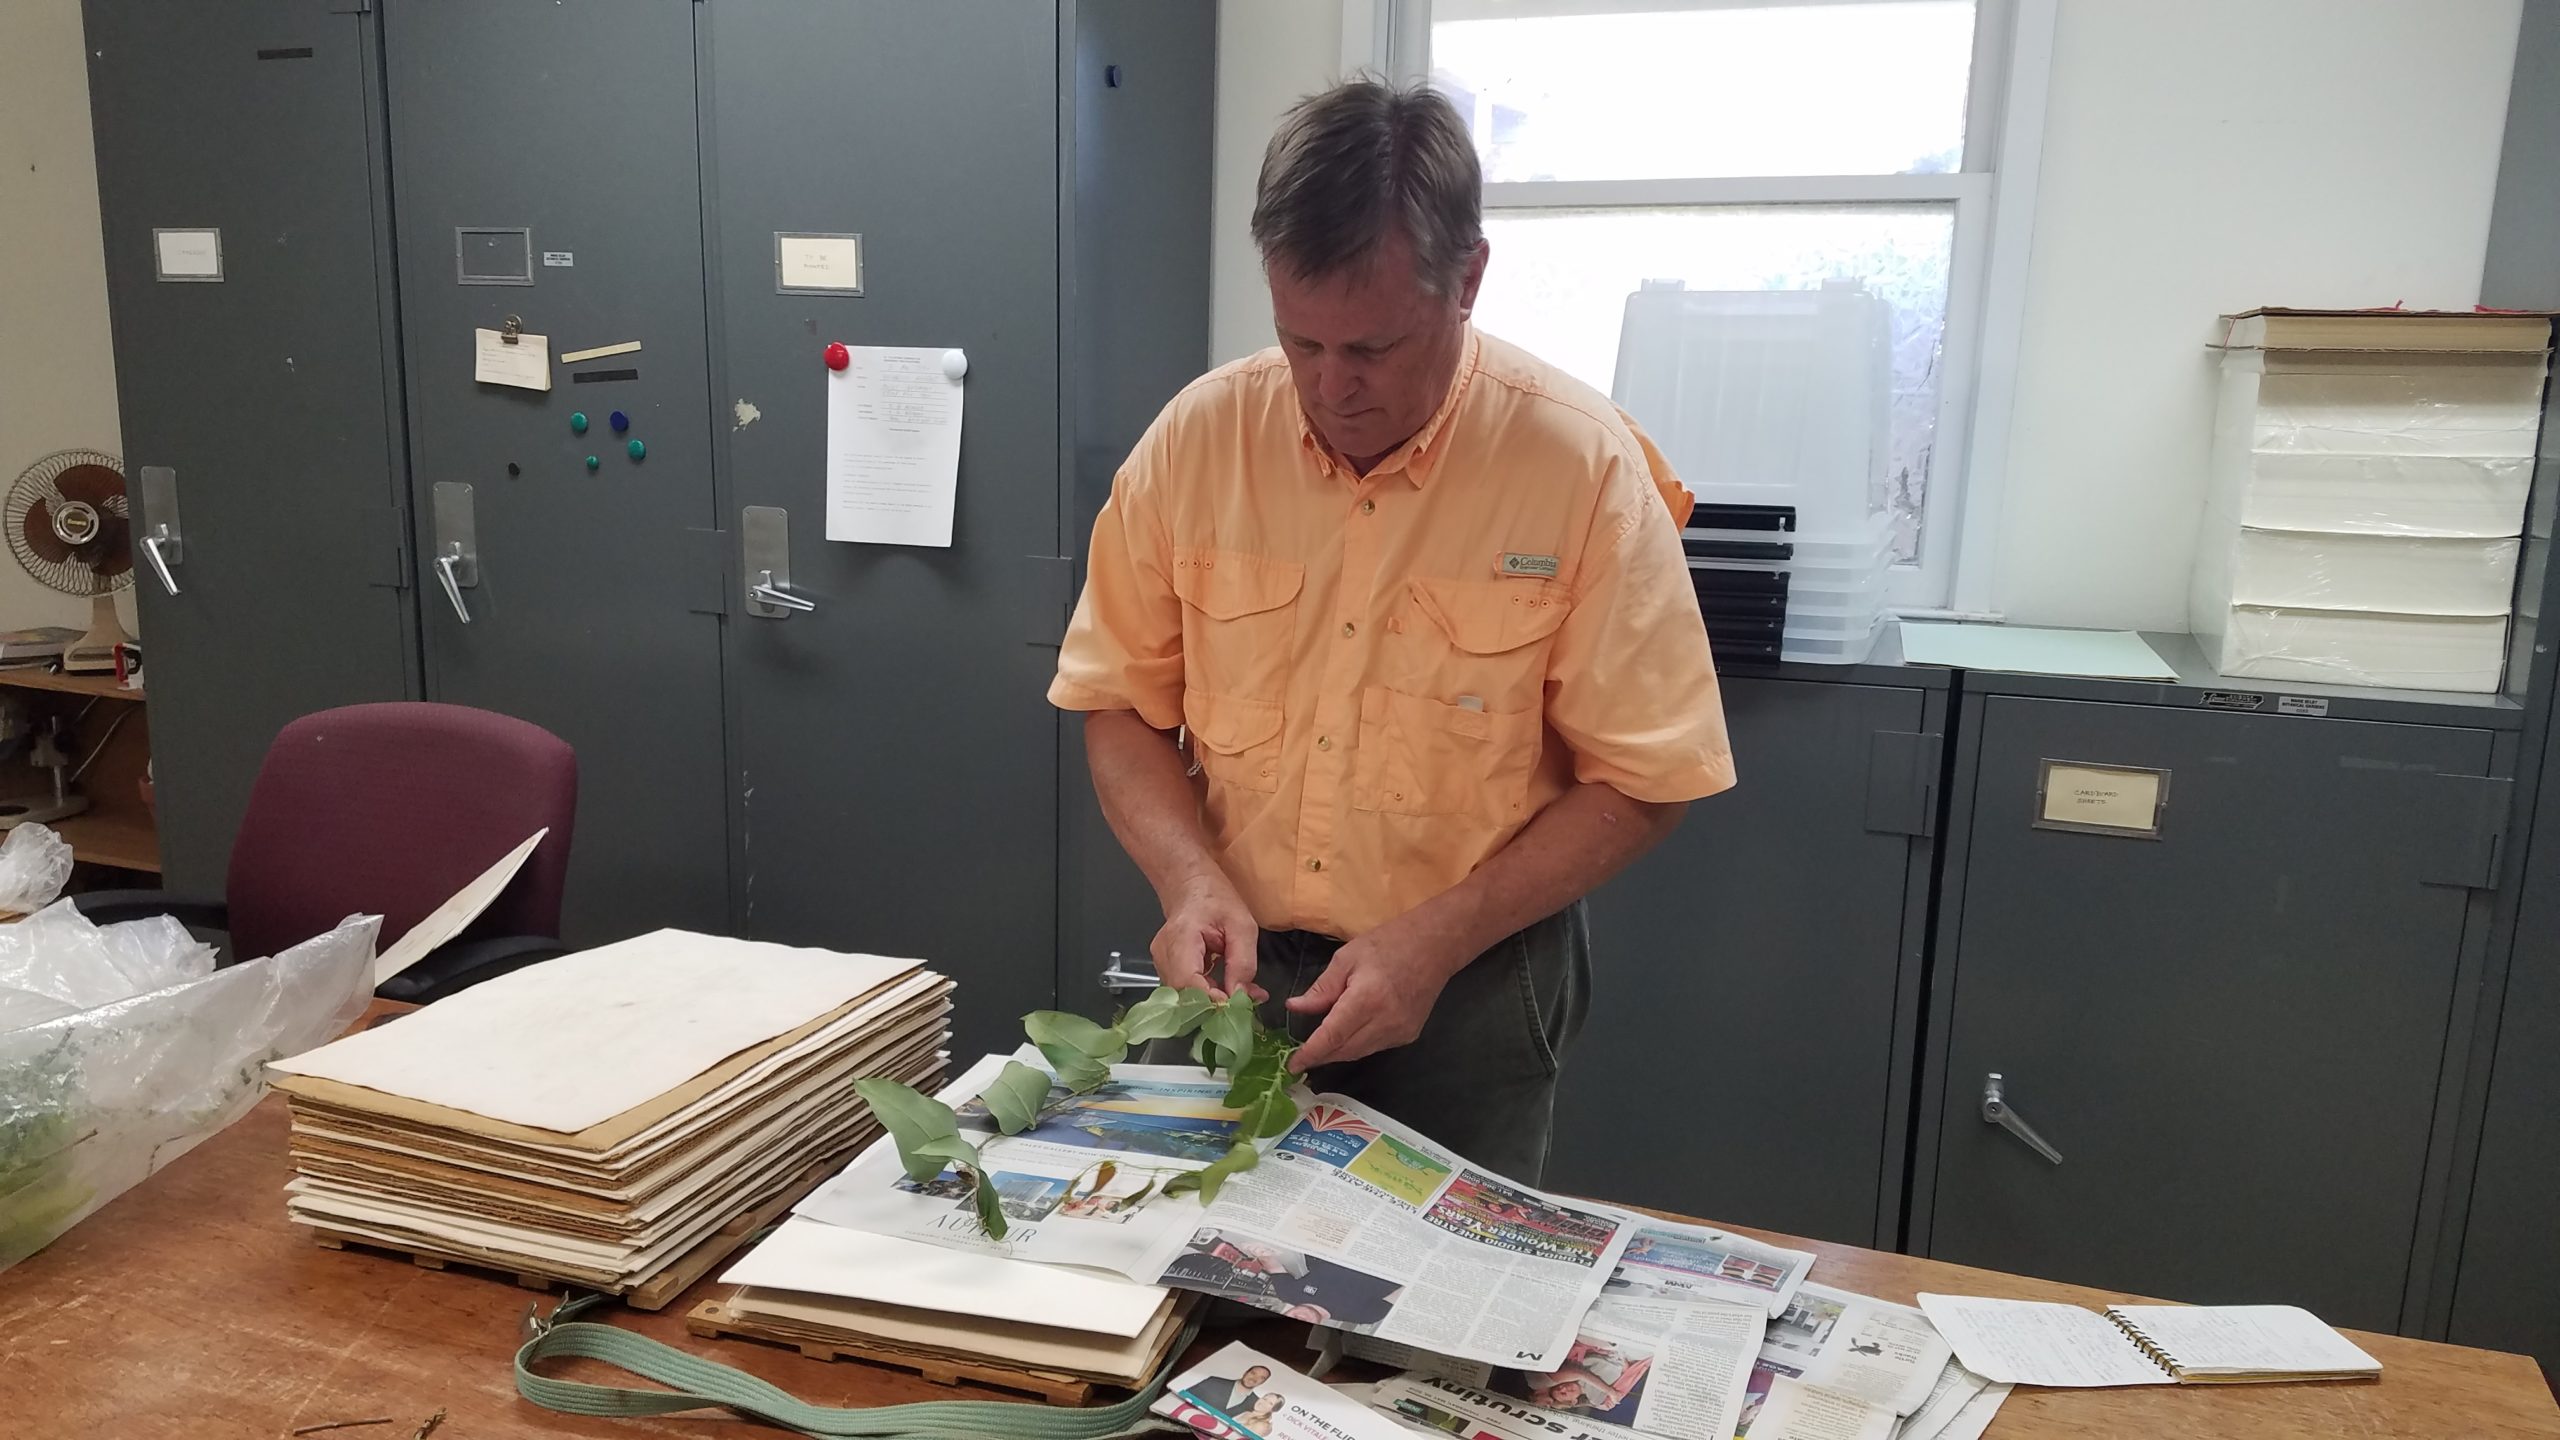 Bruce presses species in herbarium